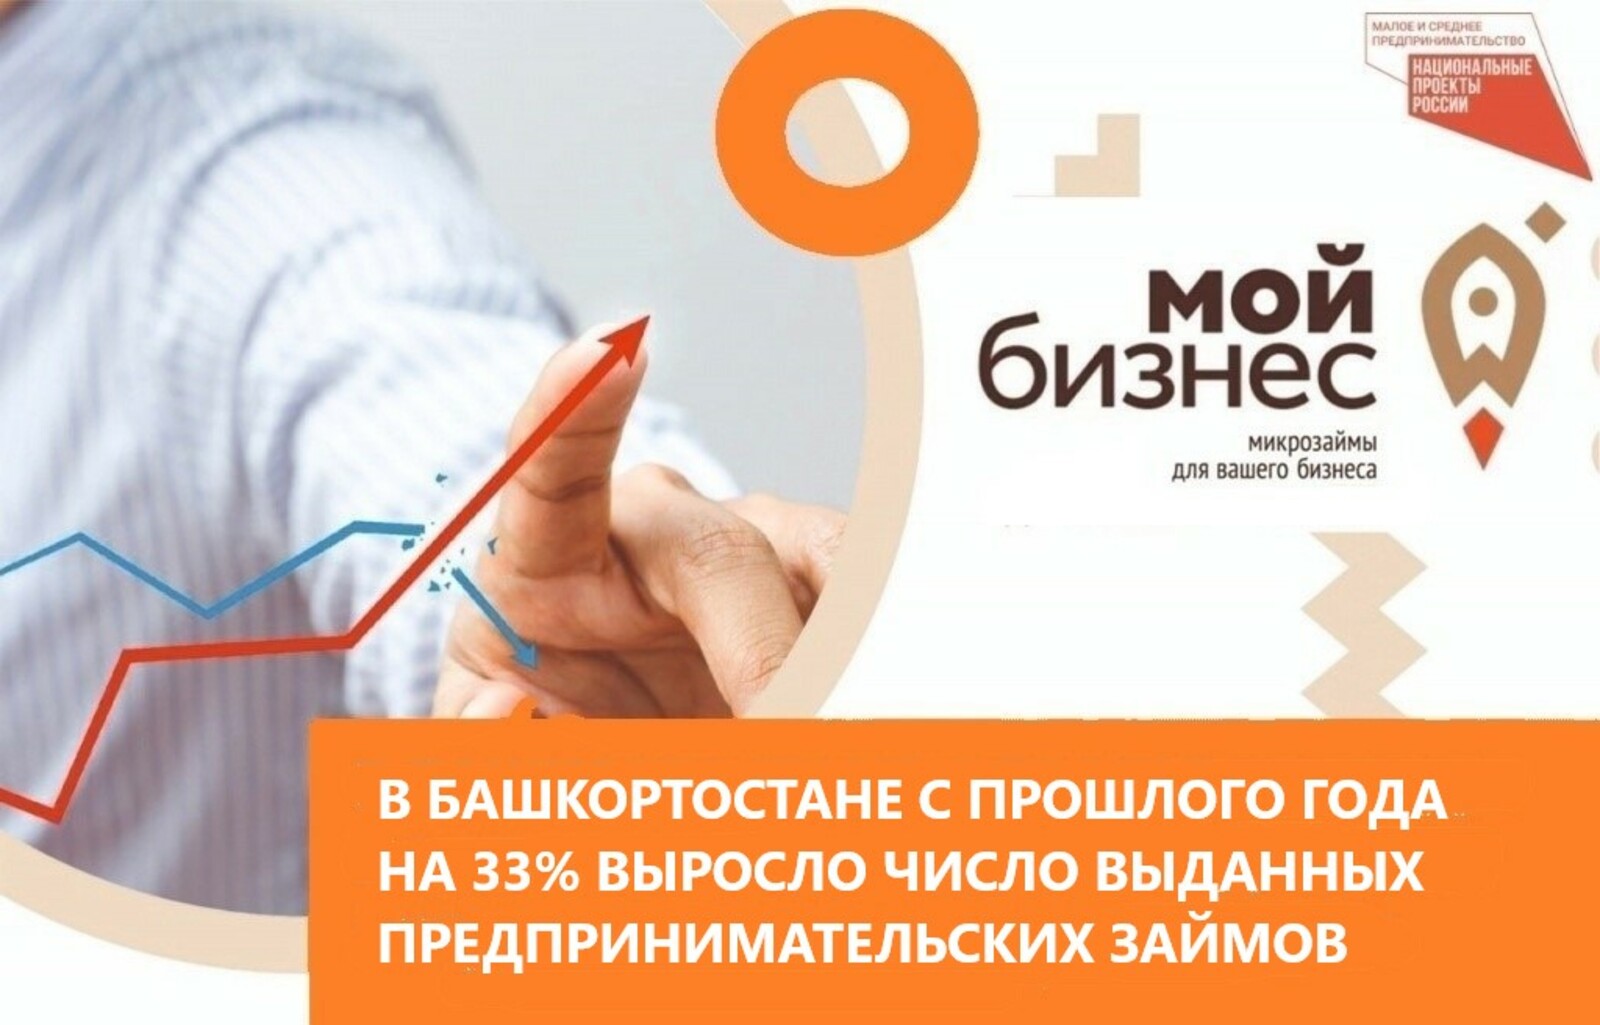 В Башкортостане с прошлого года на 33% выросло число выданных предпринимательских займов